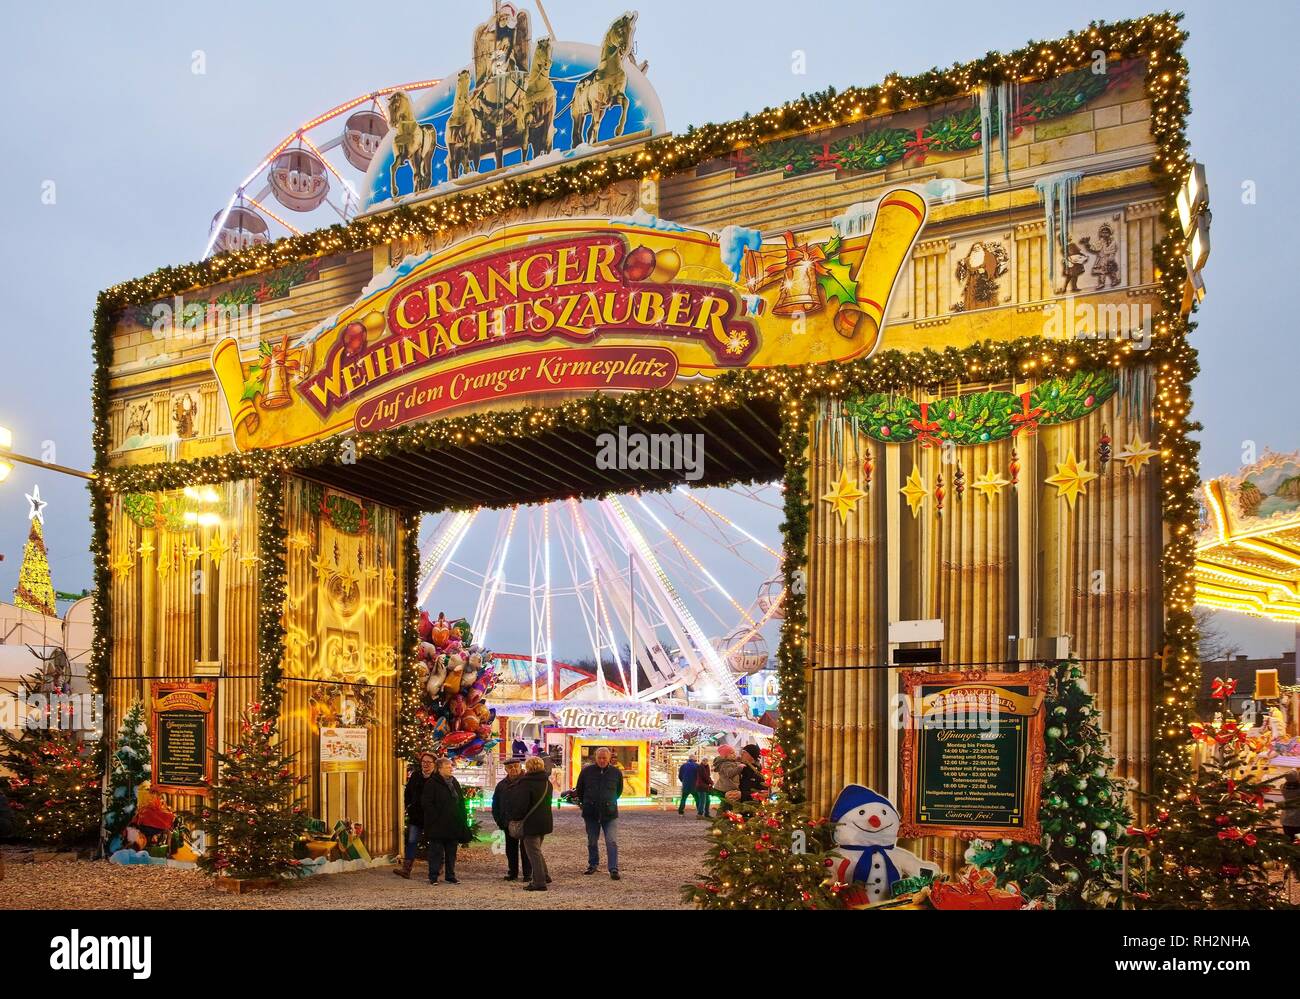 La magia de Navidad Cranger, Mercado navideño, Herne, área de Ruhr, Renania del Norte-Westfalia, Alemania Foto de stock